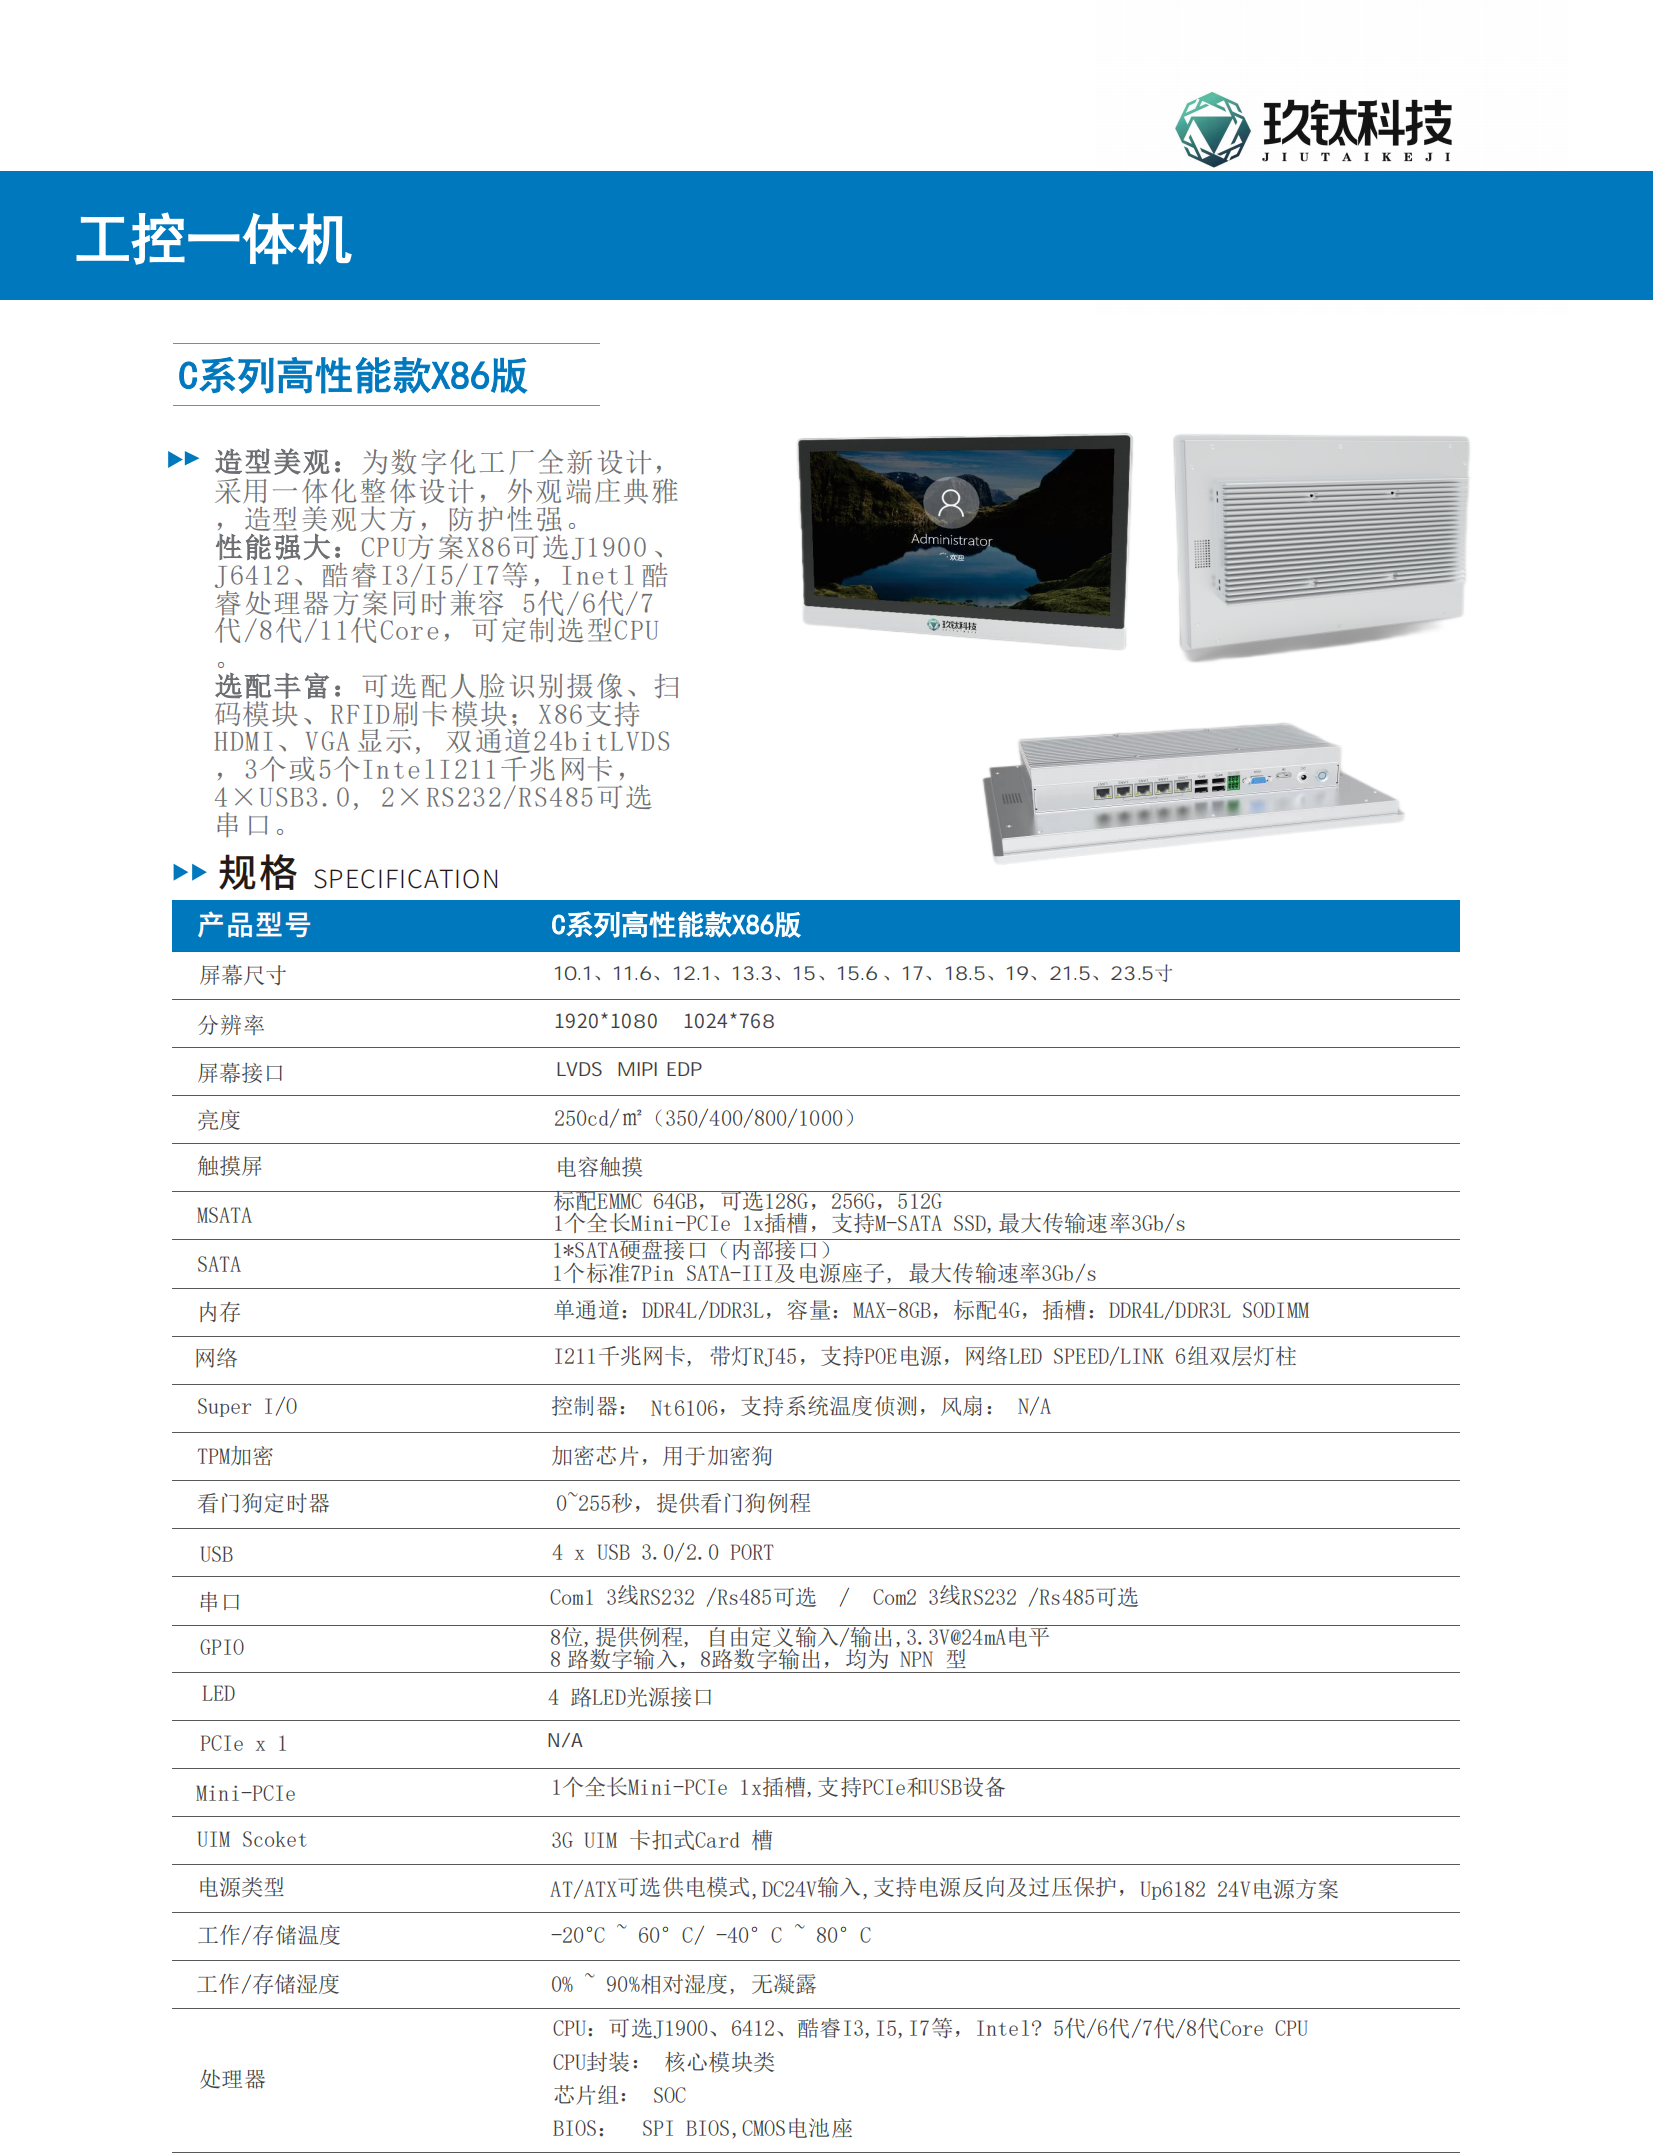 工控机-C系列高性能款X86版 产品规格书_00.png